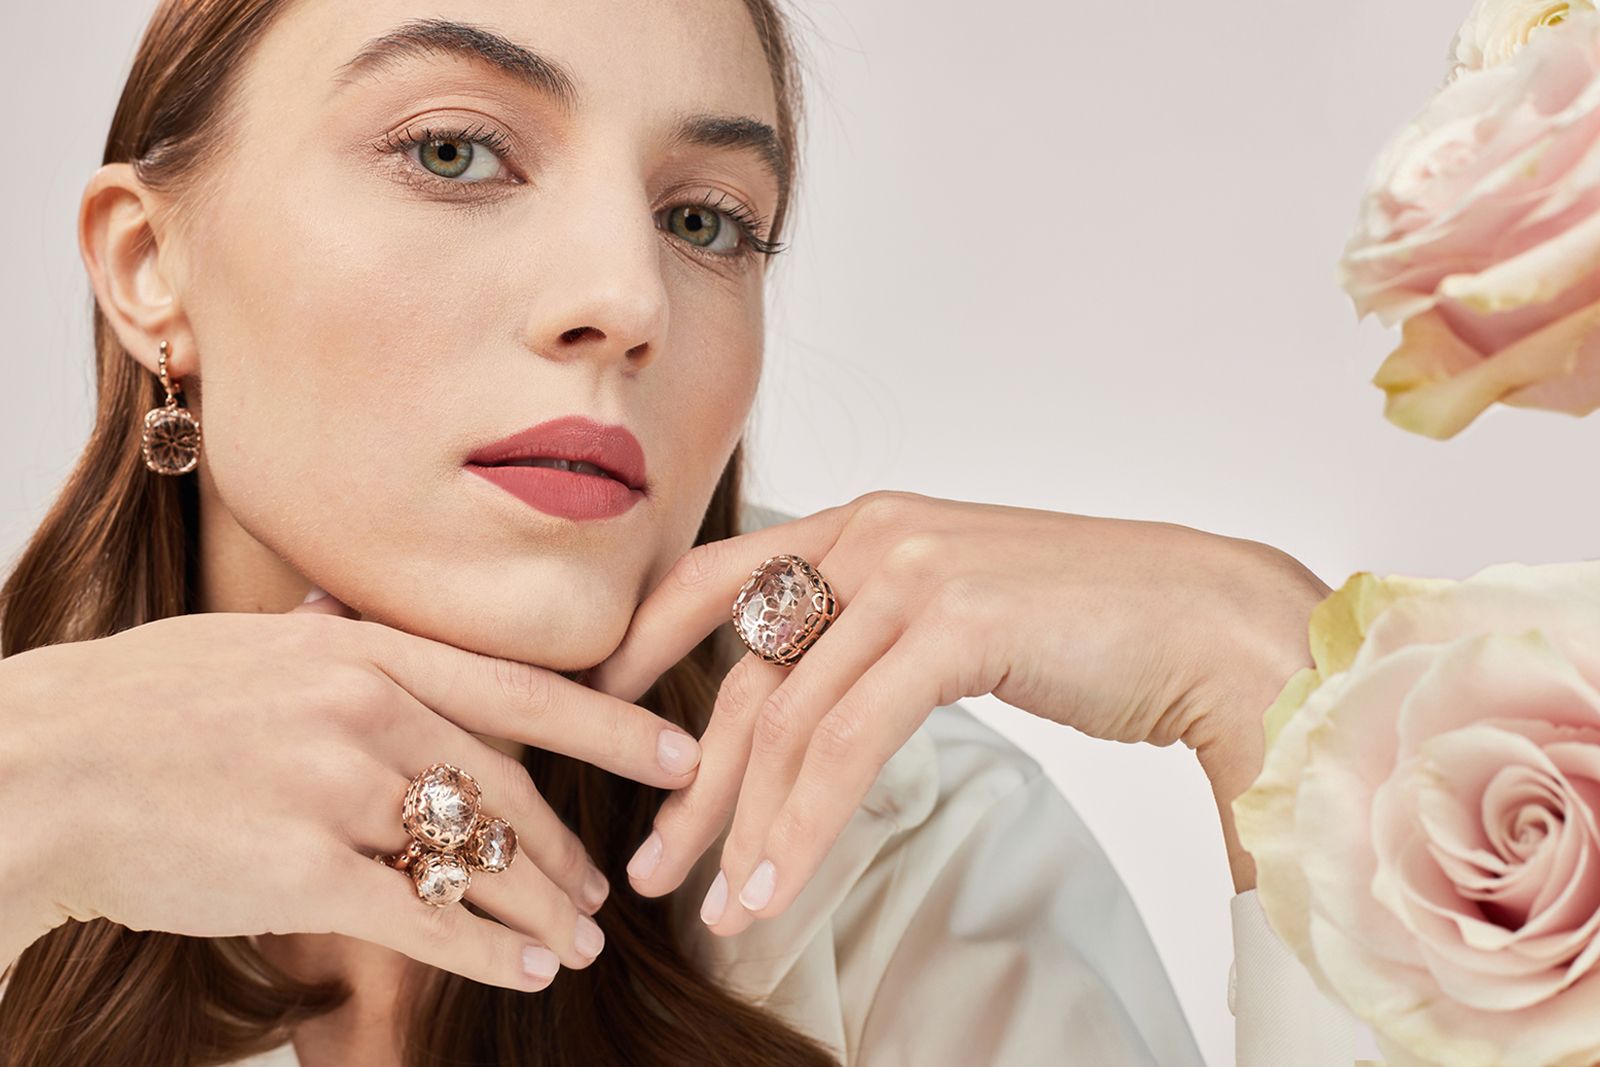 Rose quartz jewellery suite by Laurent Gandini